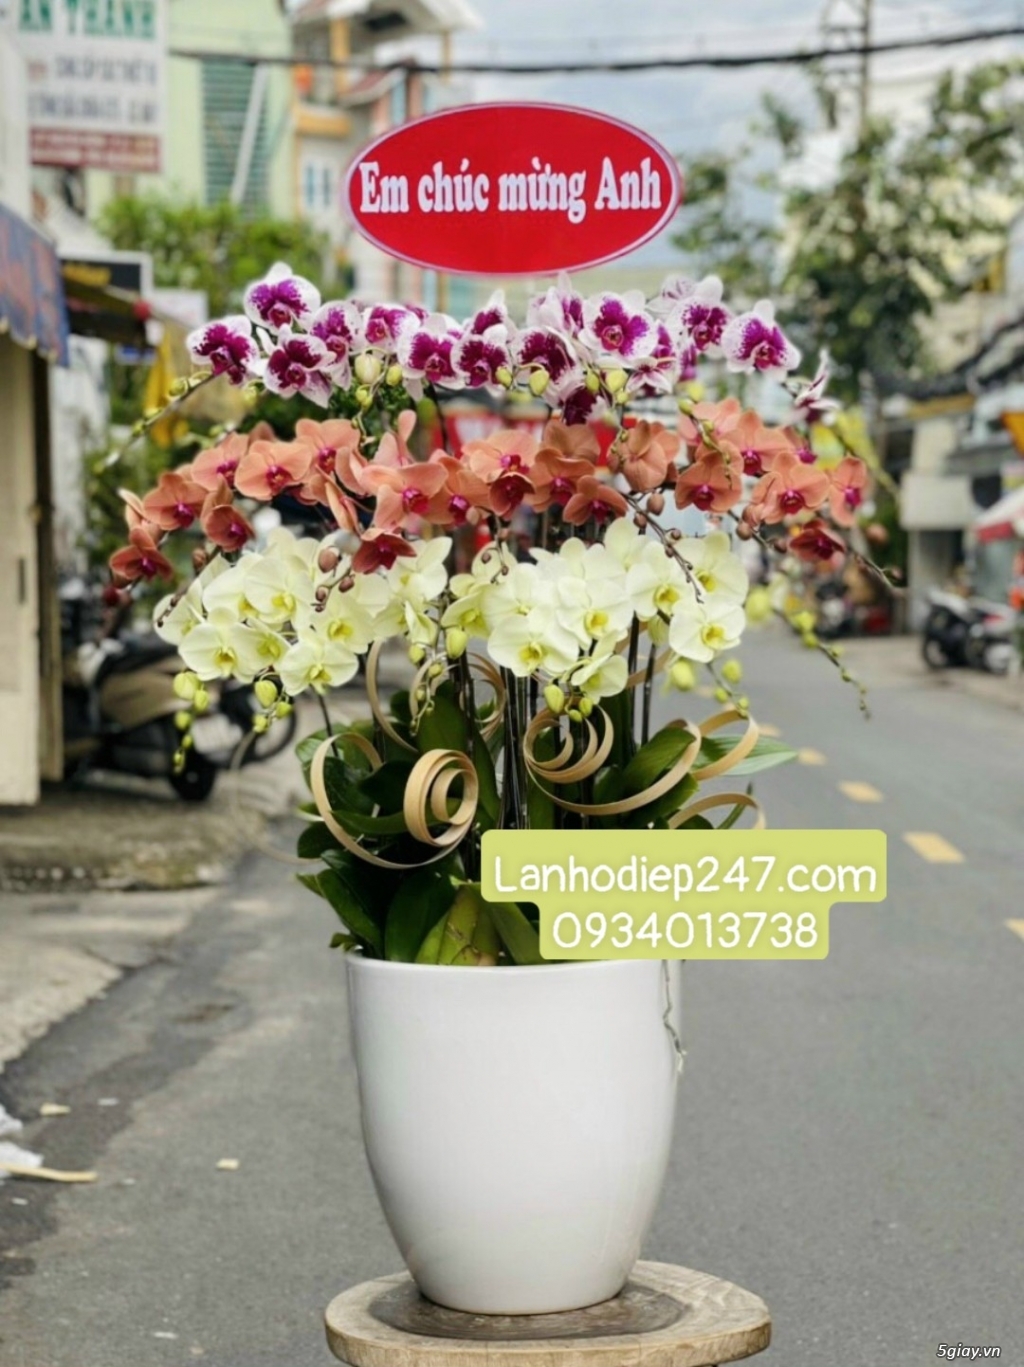 Cửa hàng Hoa Sài Gòn 247 là địa điểm đặt hoa uy tín nhất Sài Gòn